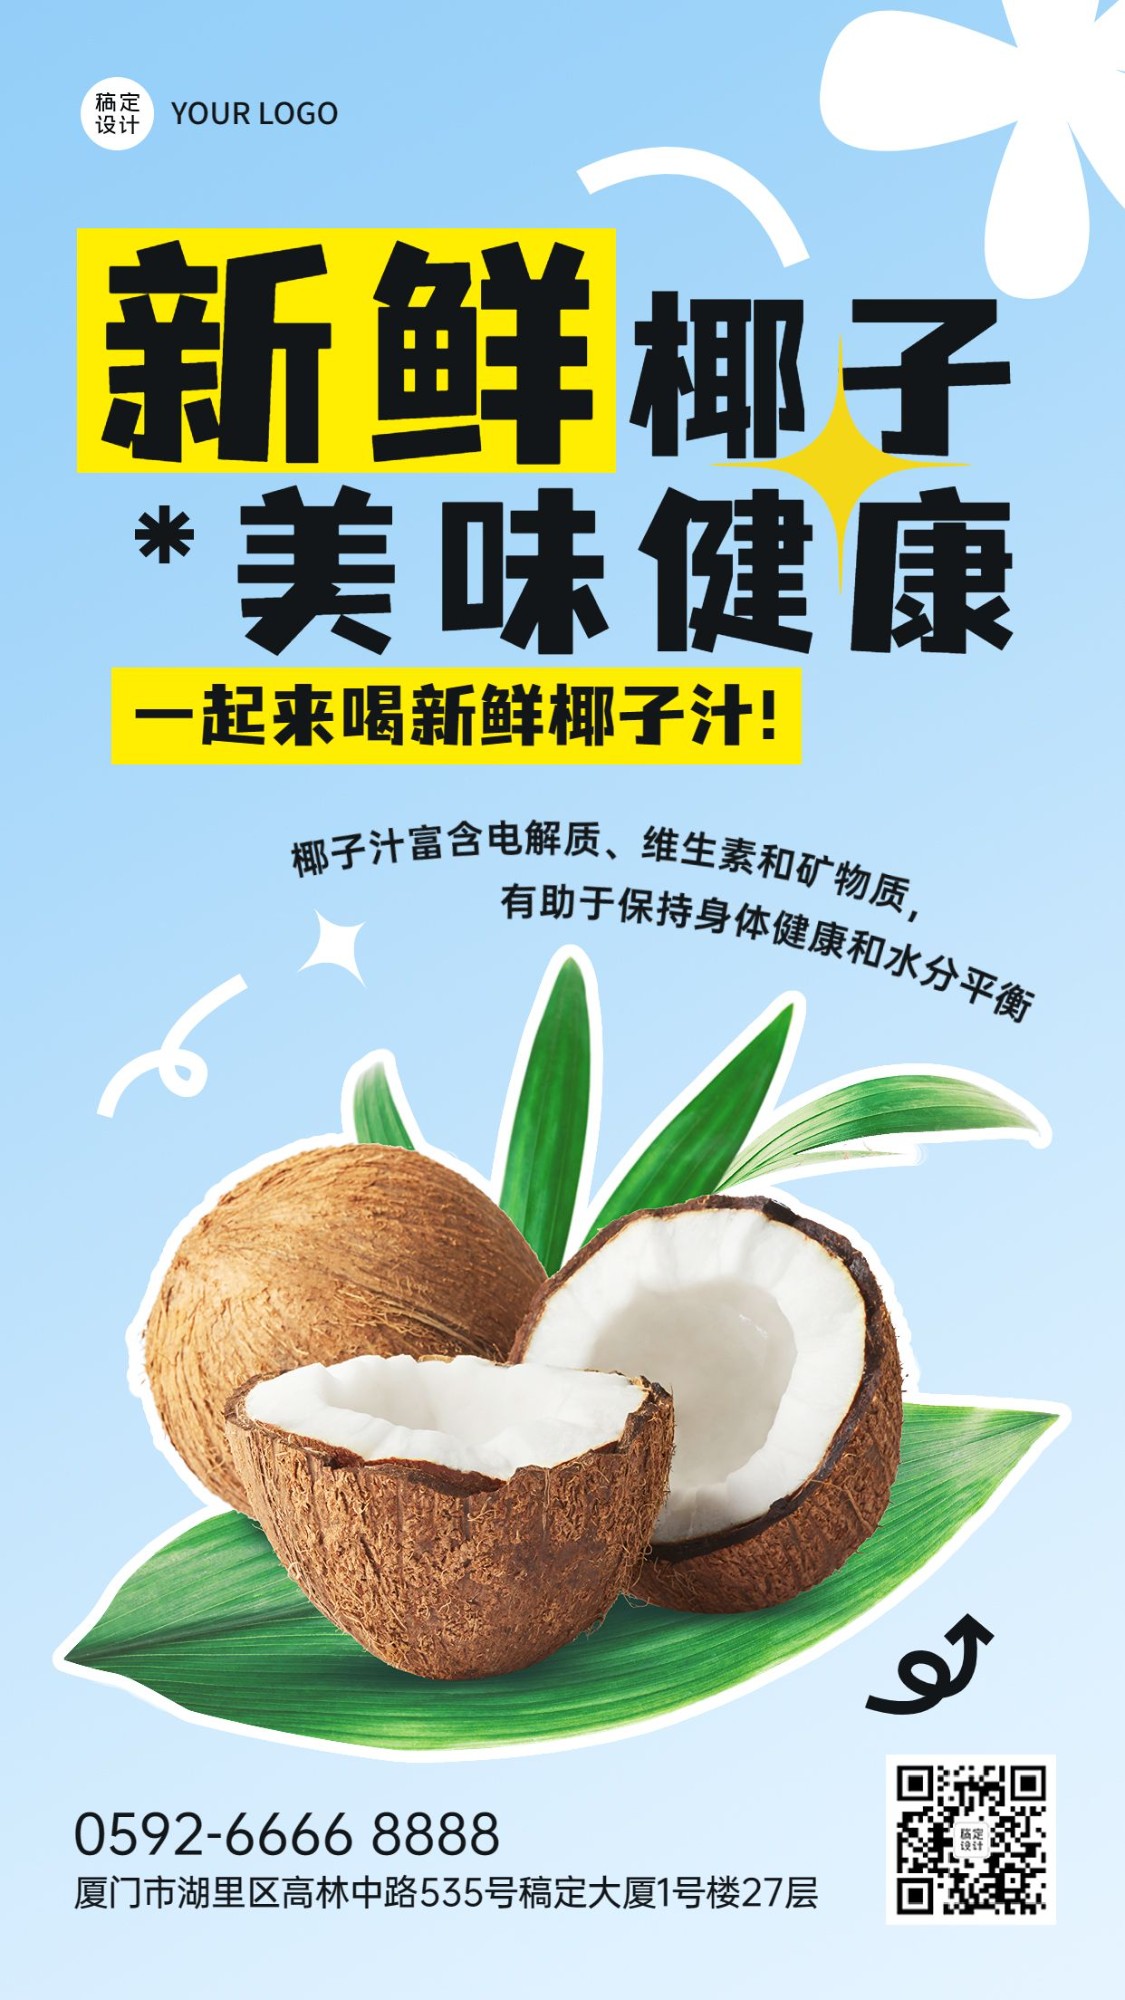 水果捞营销食品生鲜水果椰子产品展示竖版海报预览效果